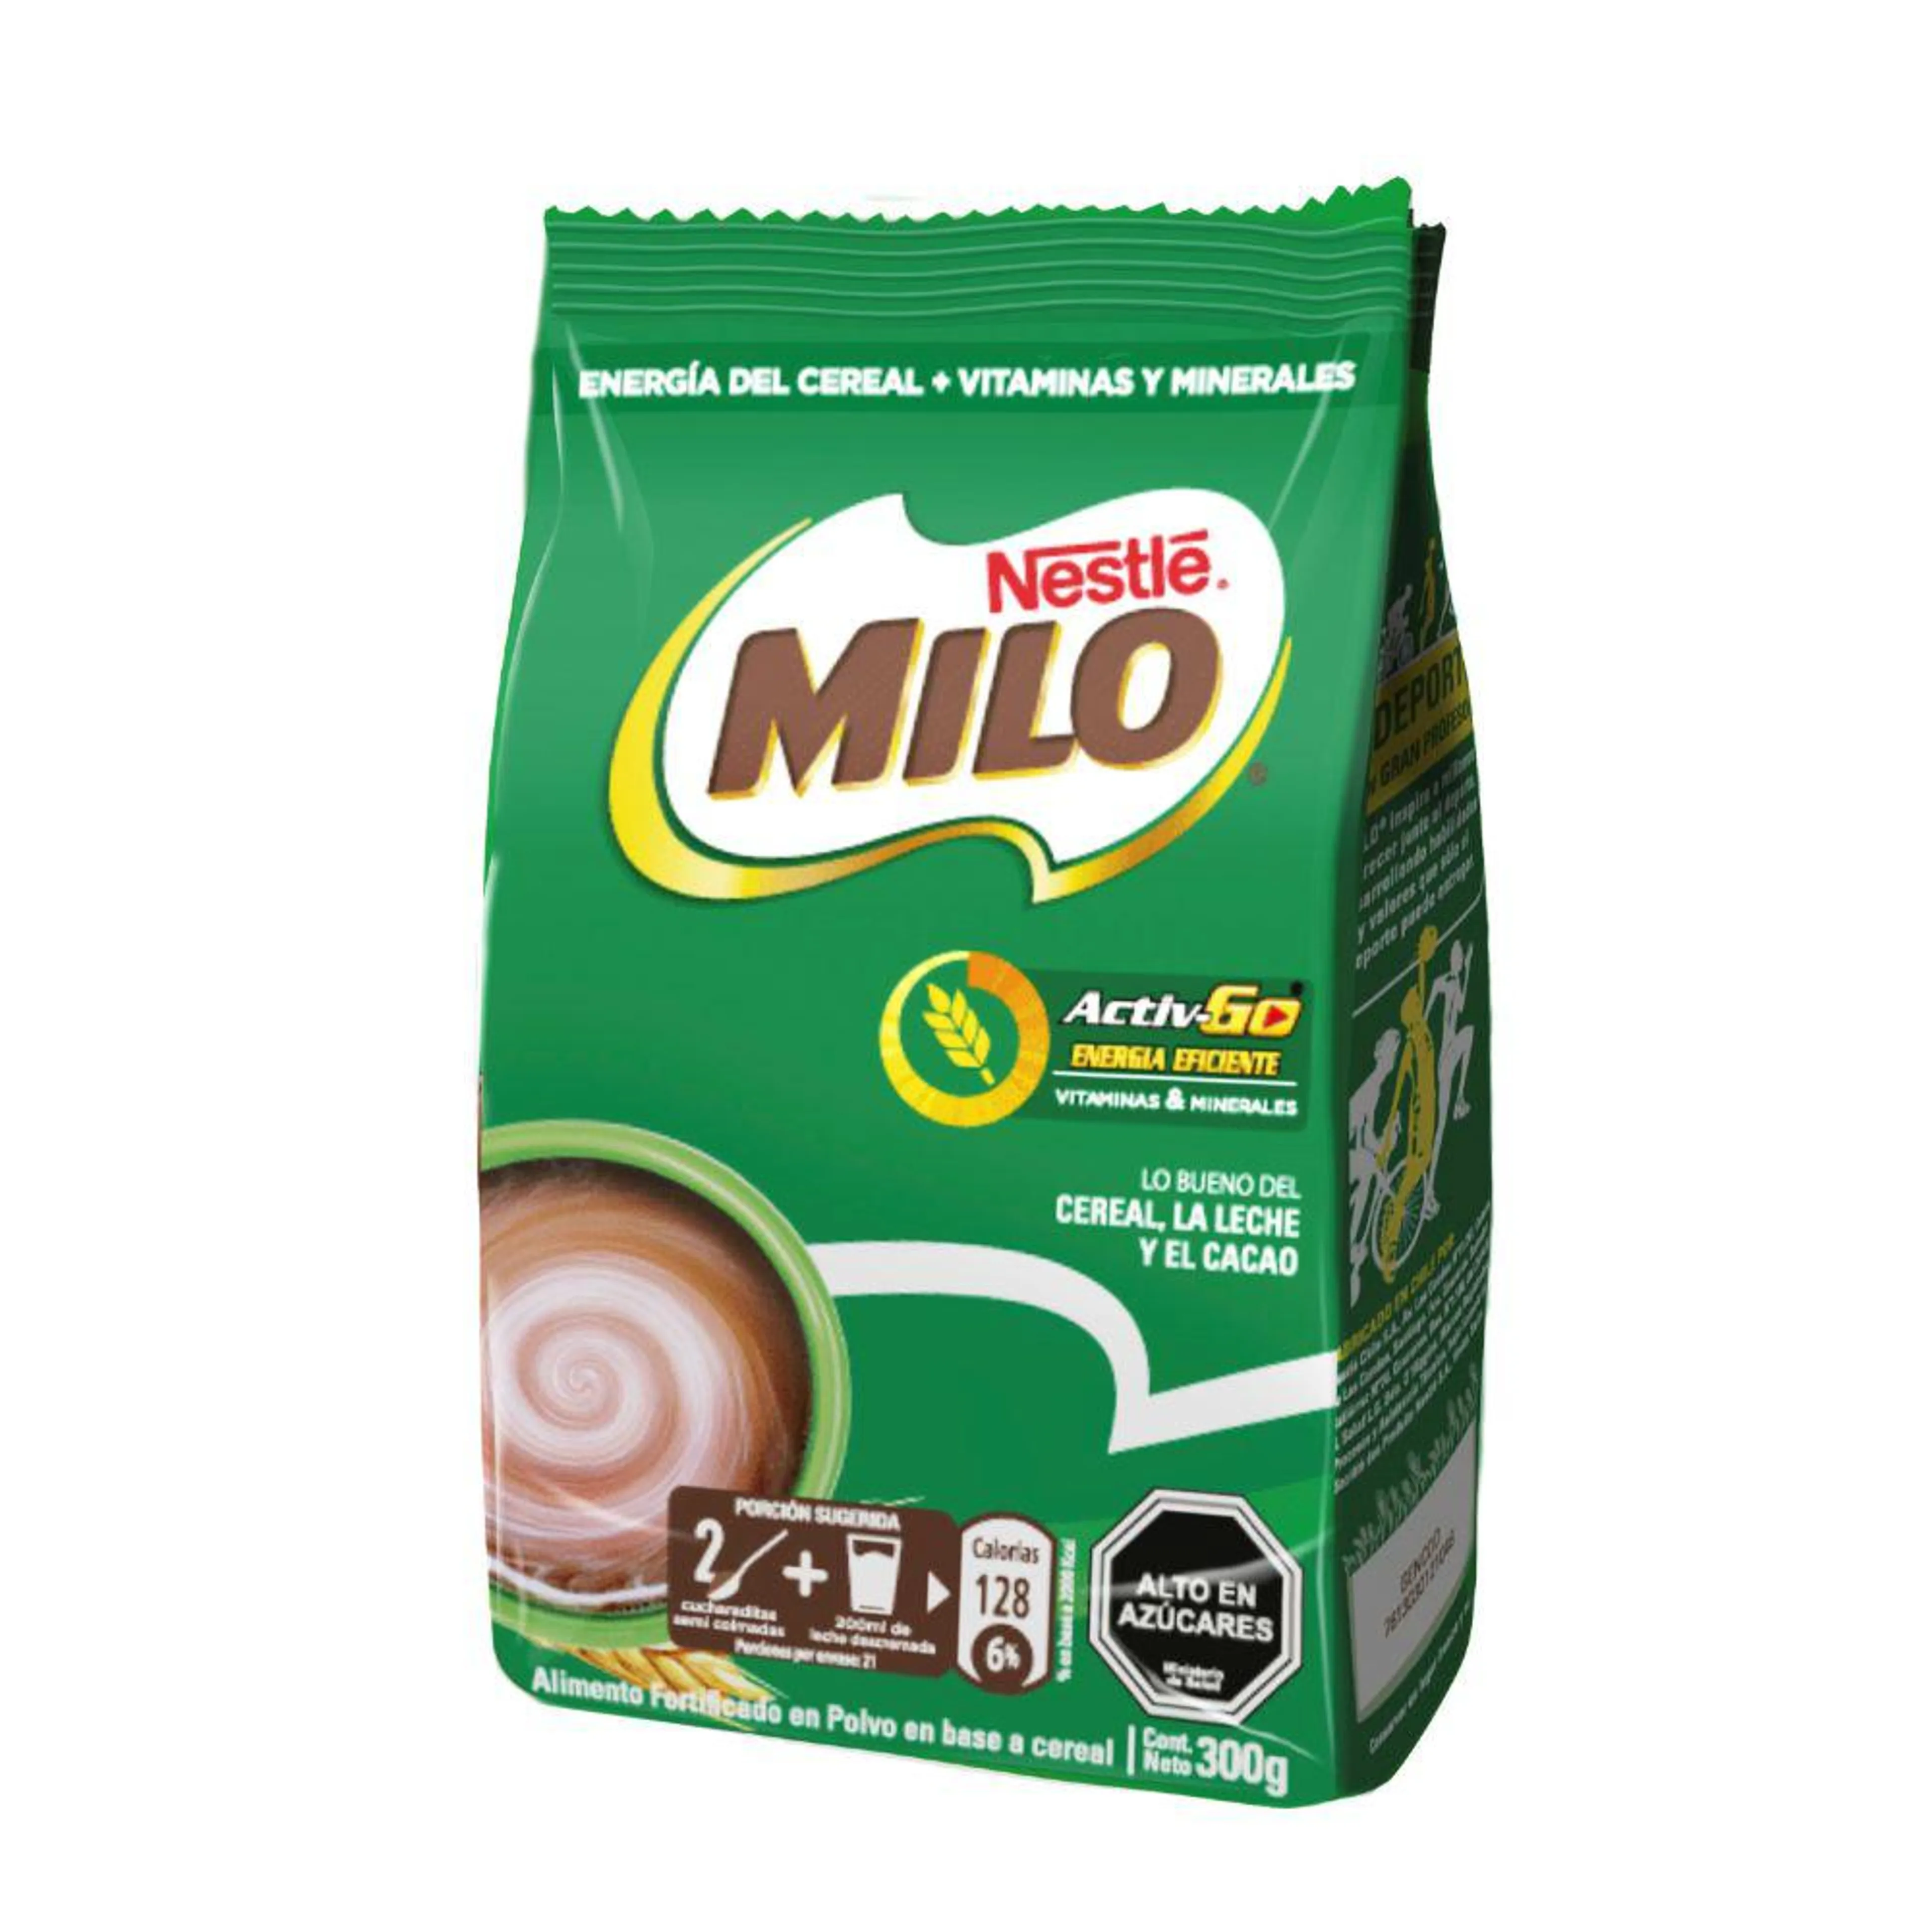 Saborizante para leche Milo activ-go chocolate bolsa 300 g